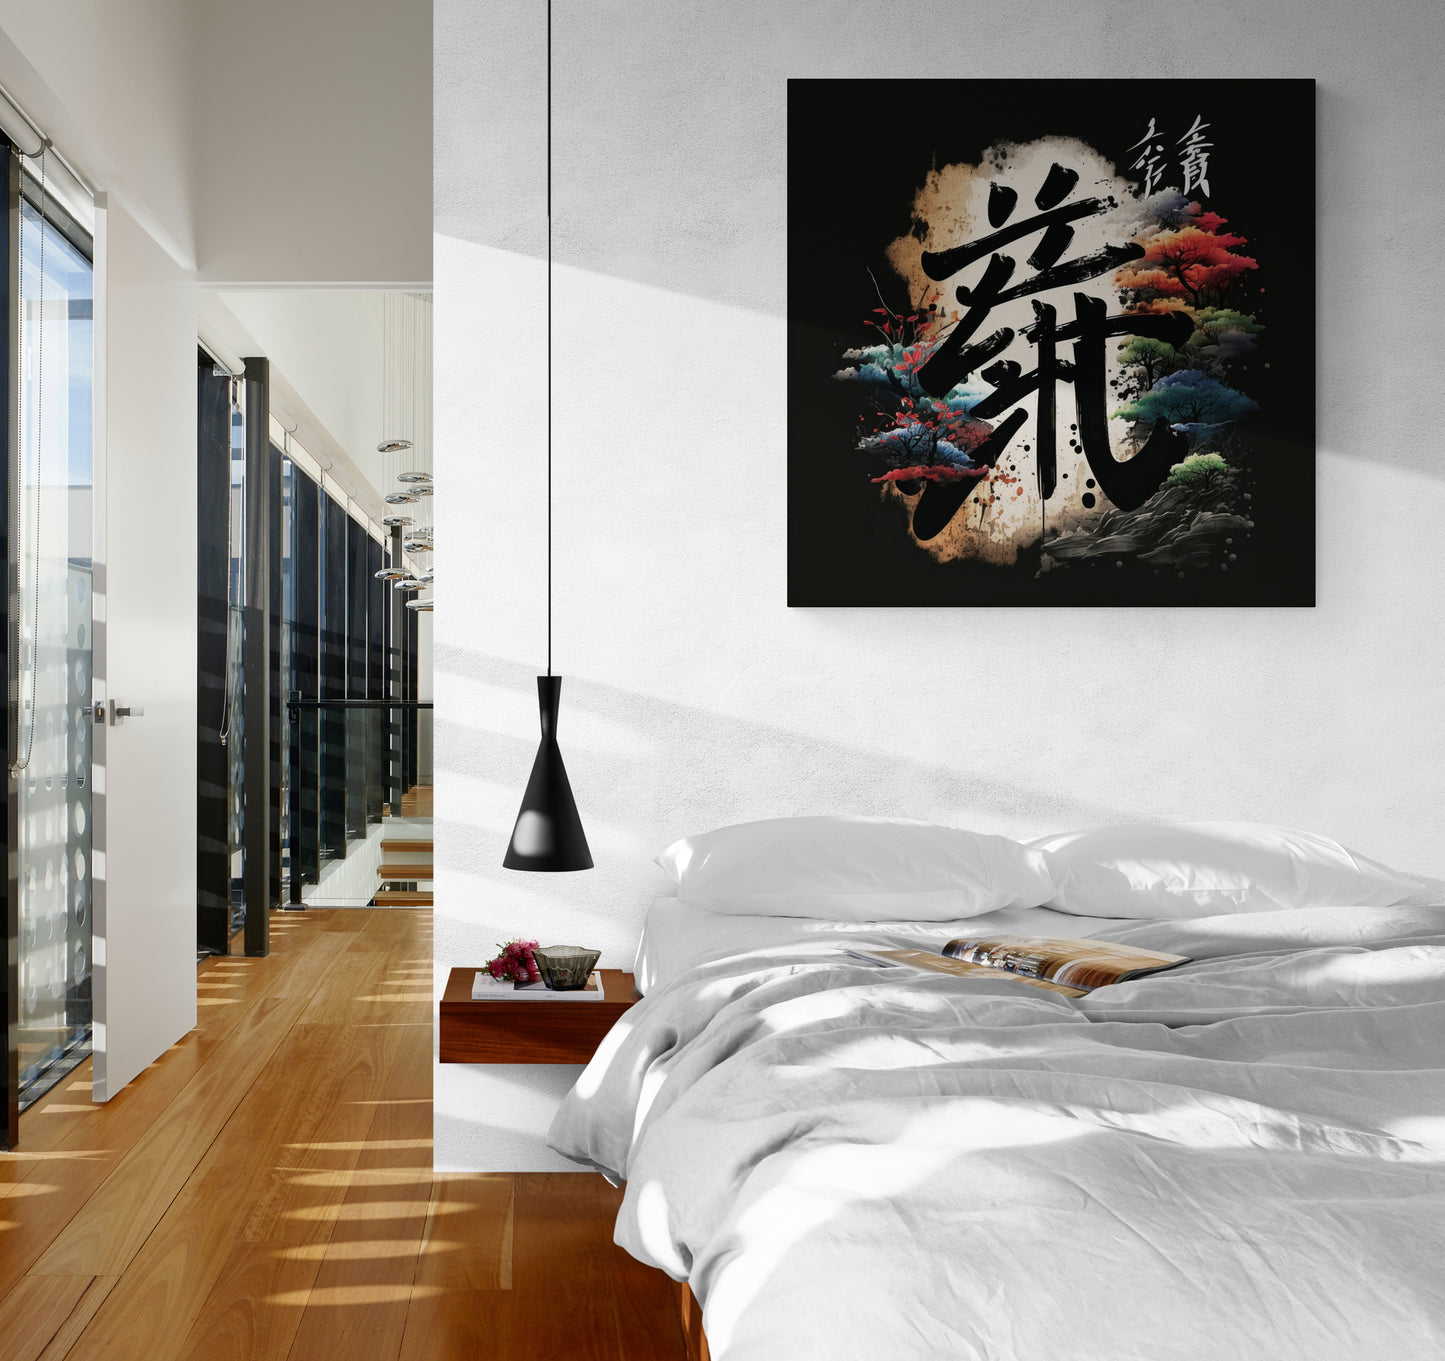 Décoration murale élégante : tableau harmonieux, esprit zen, style japonais